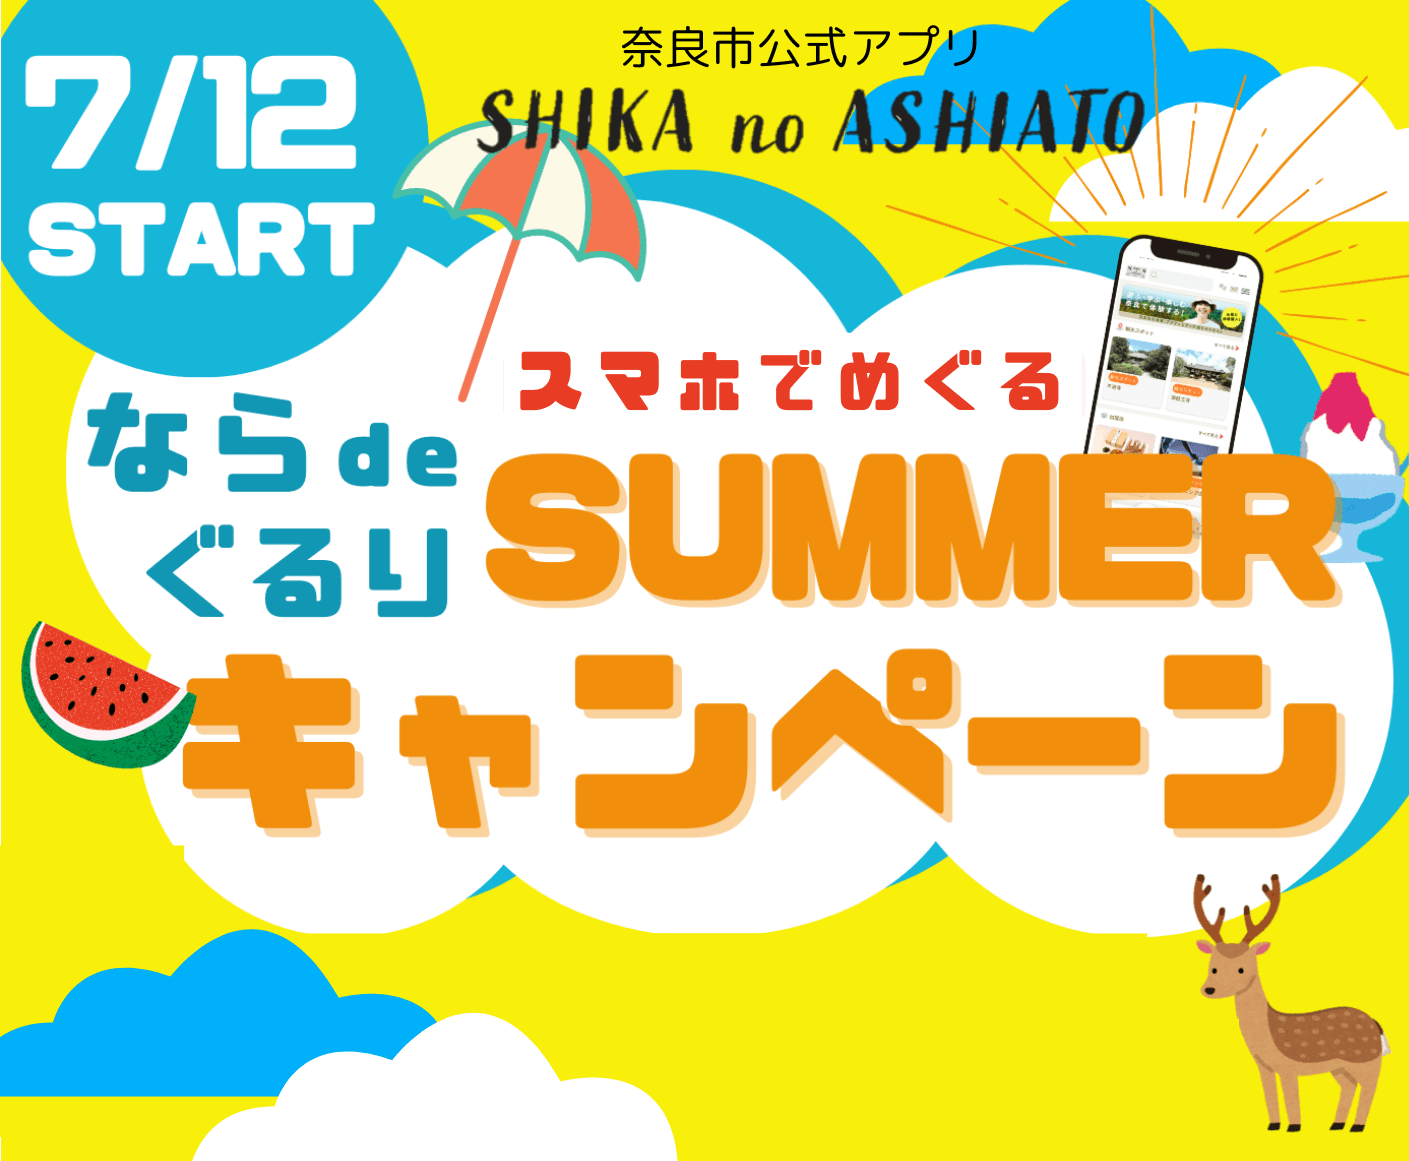 ～奈良市公式アプリ「SHIKA no ASHIATO」夏のキャンペーン～『スマホでめぐる！ならdeぐるり サマーキャンペーン』を7月12日（金）より実施します！